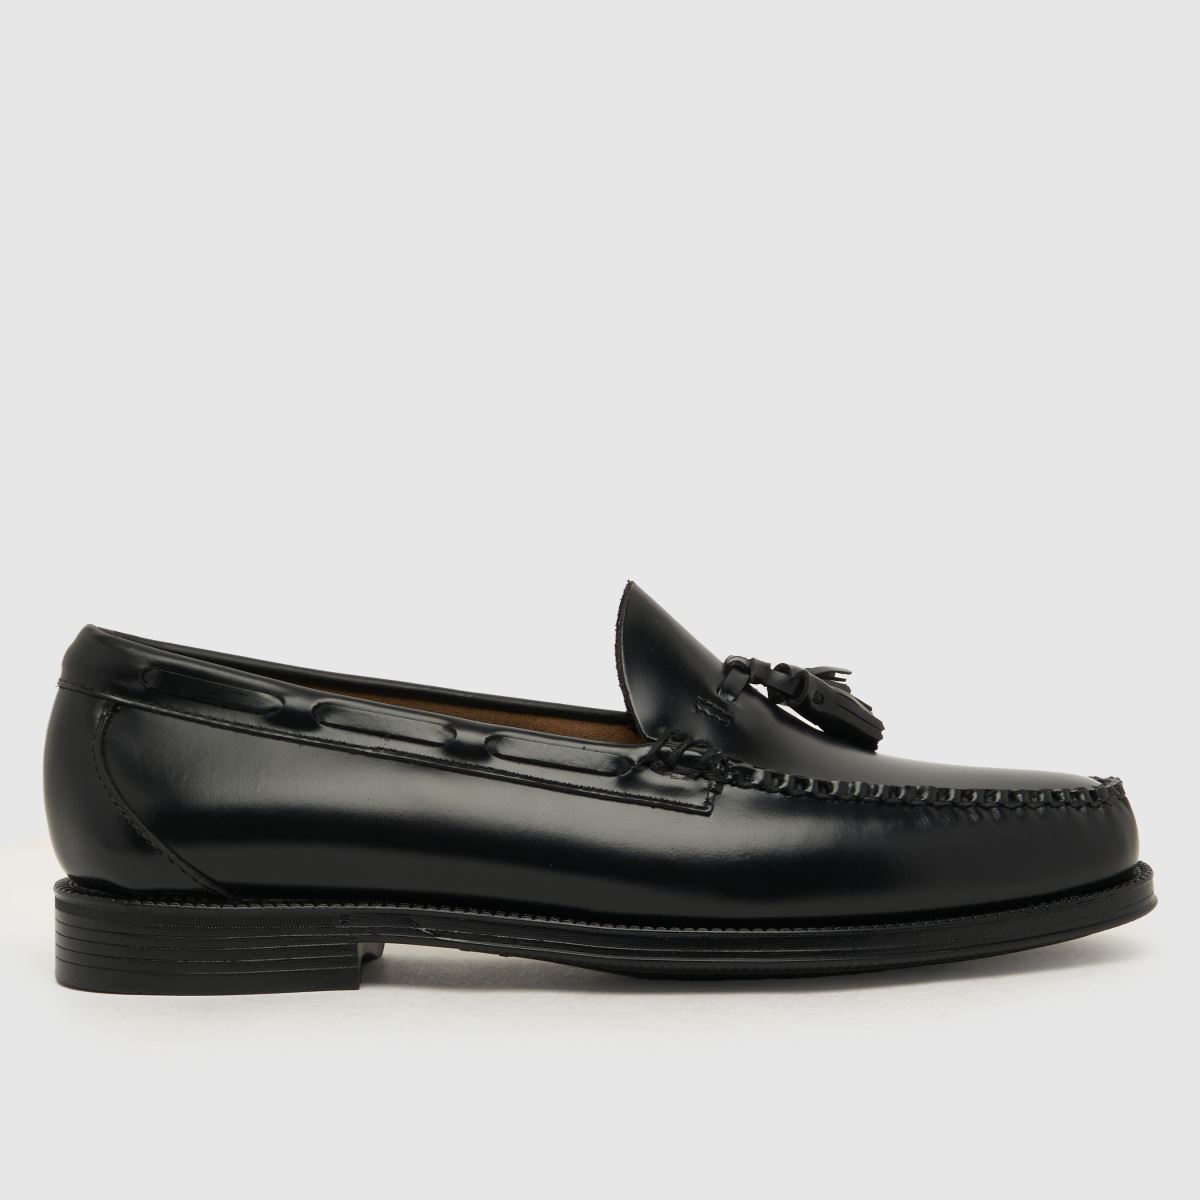 G.H. BASS easy weejun larkin shoes in black